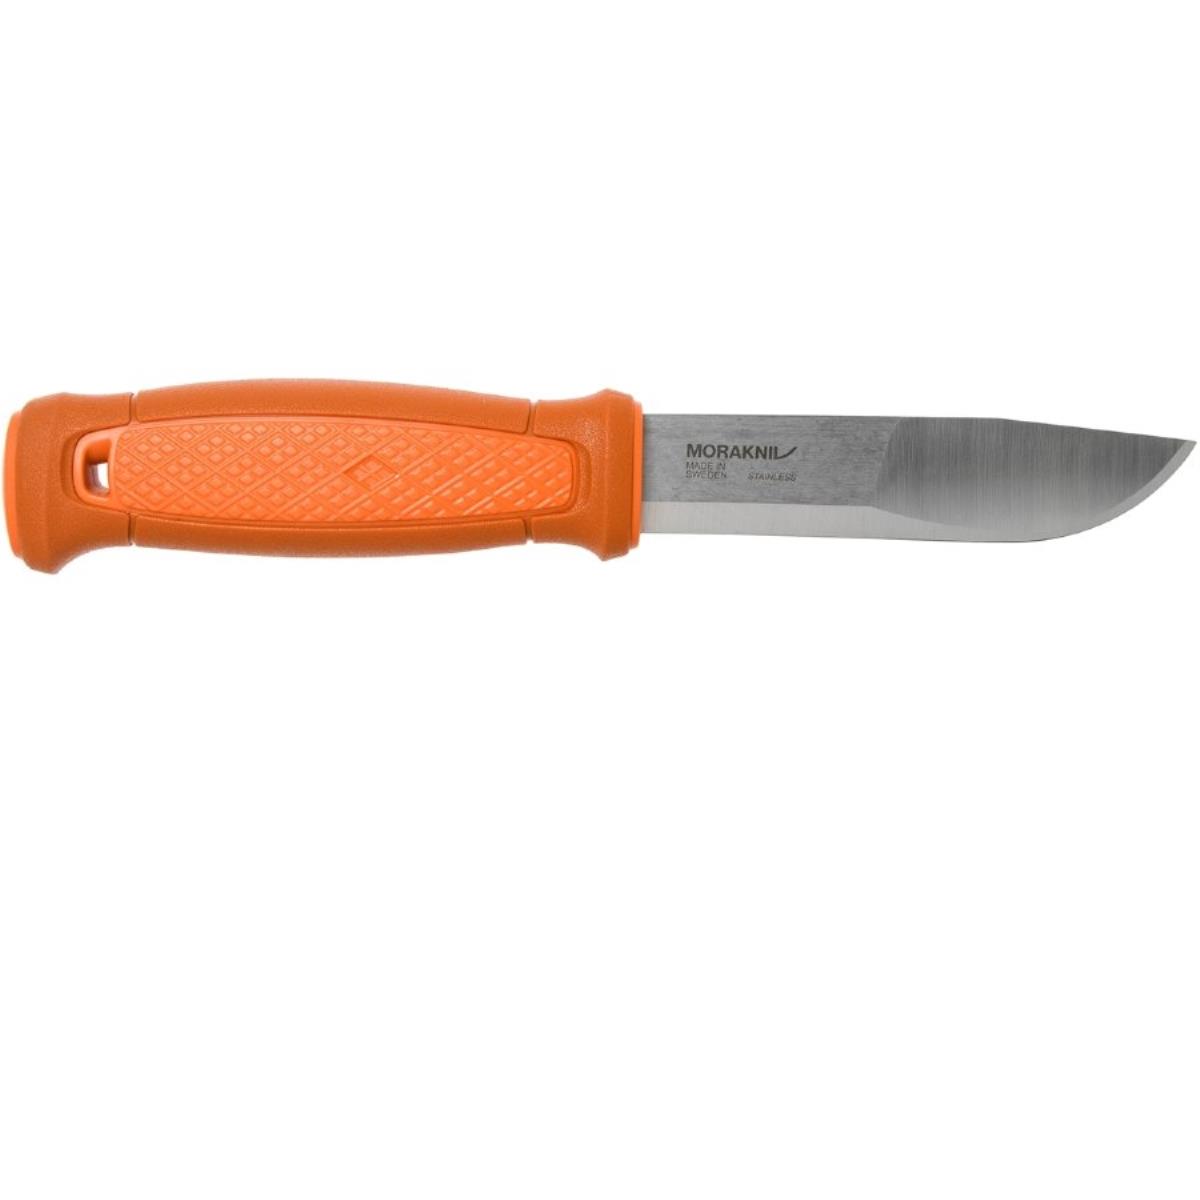 Нож Kansbol Burnt Orange (13505) Morakniv нож kniv craftline q allround 0711 11481 morakniv